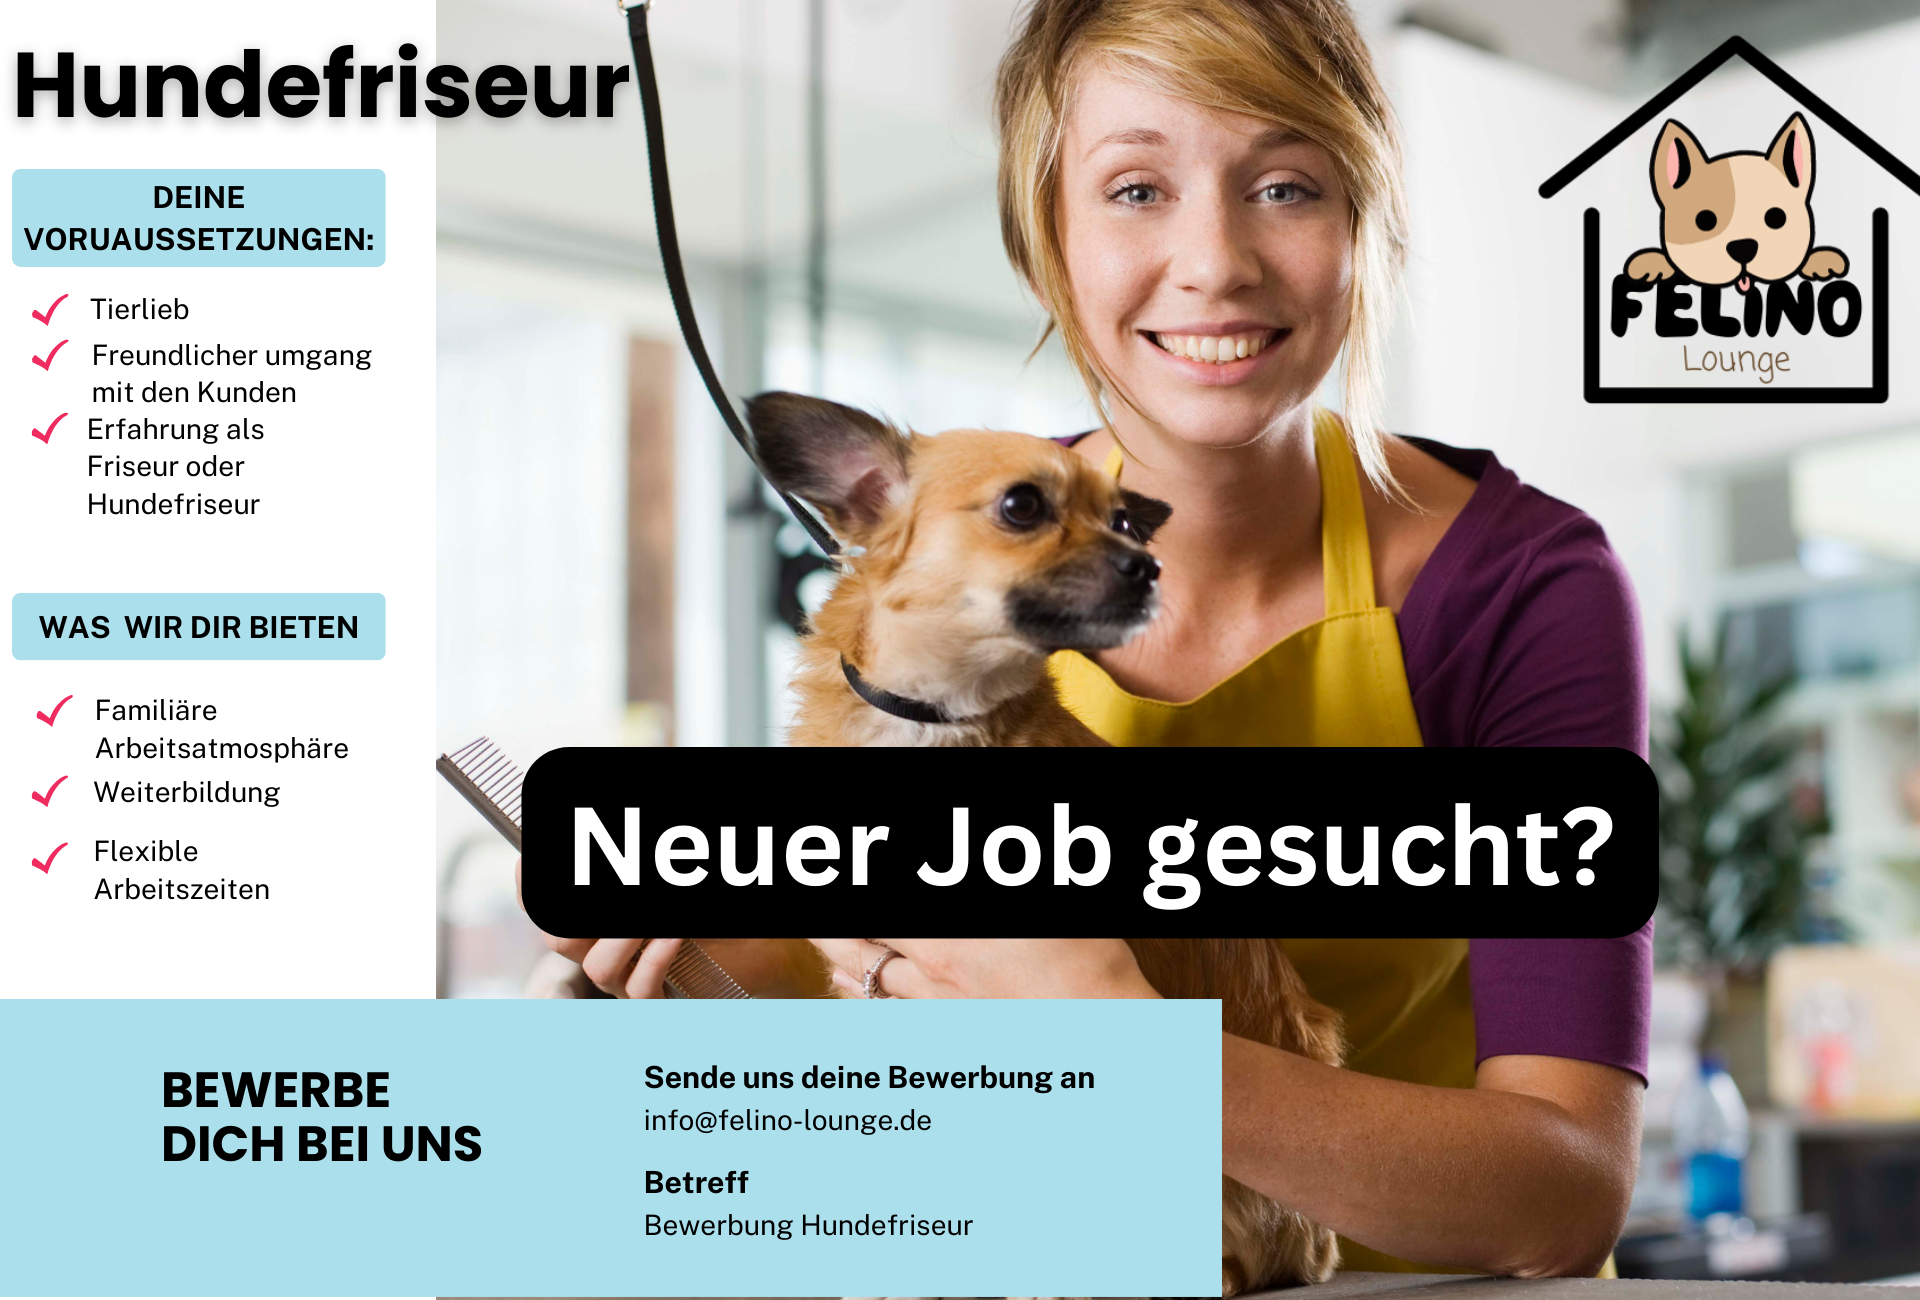 Hundefriseur Stellenanzeige in Köln